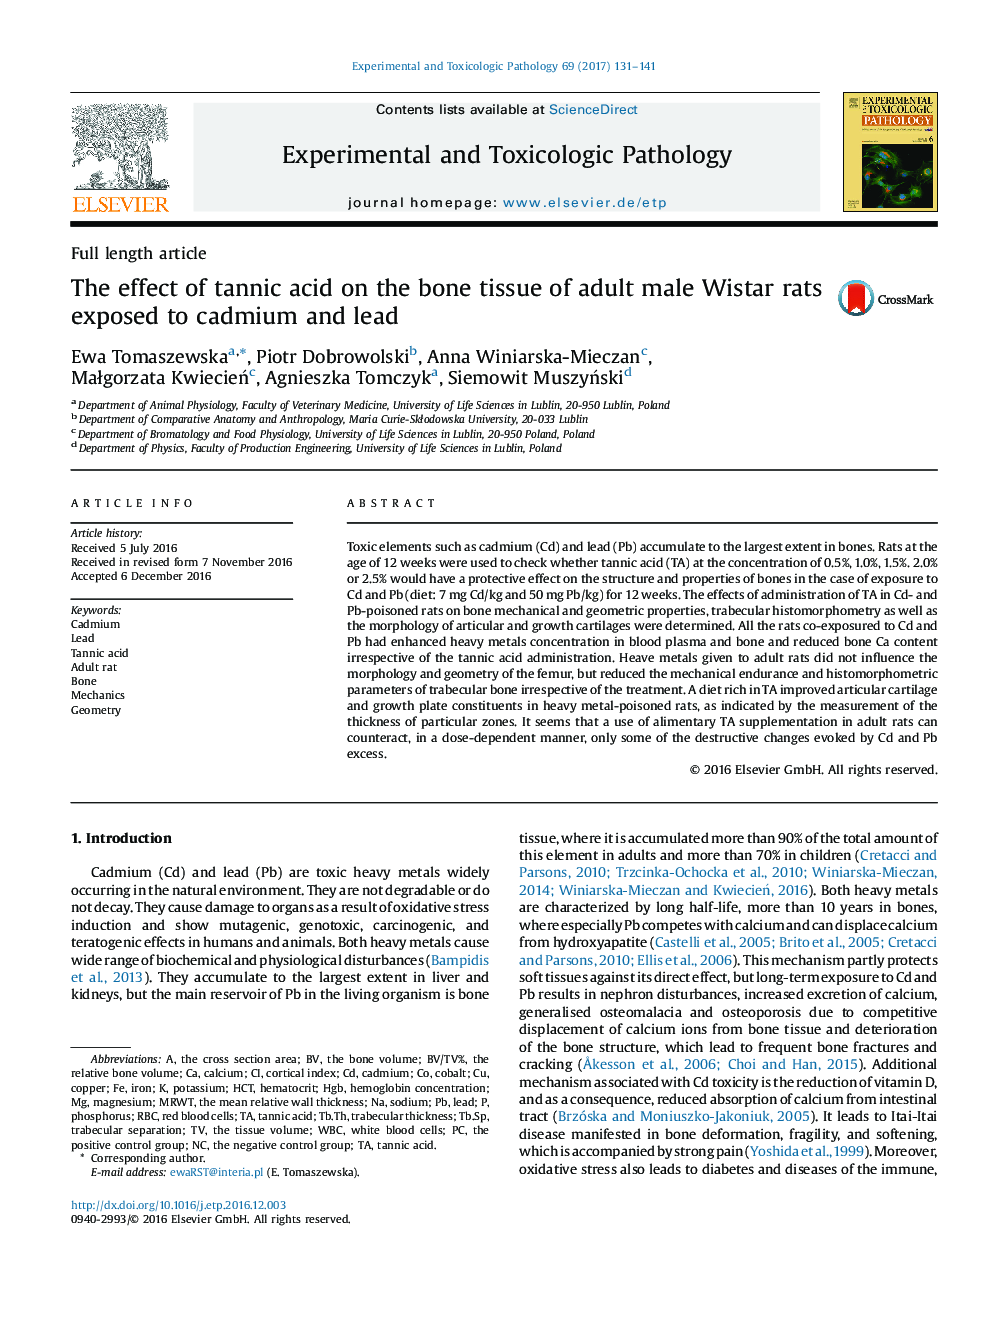 اثر اسید تنییک بر روی بافت استخوانی موش های بالغ نر ویتار در معرض کادمیوم و سرب 